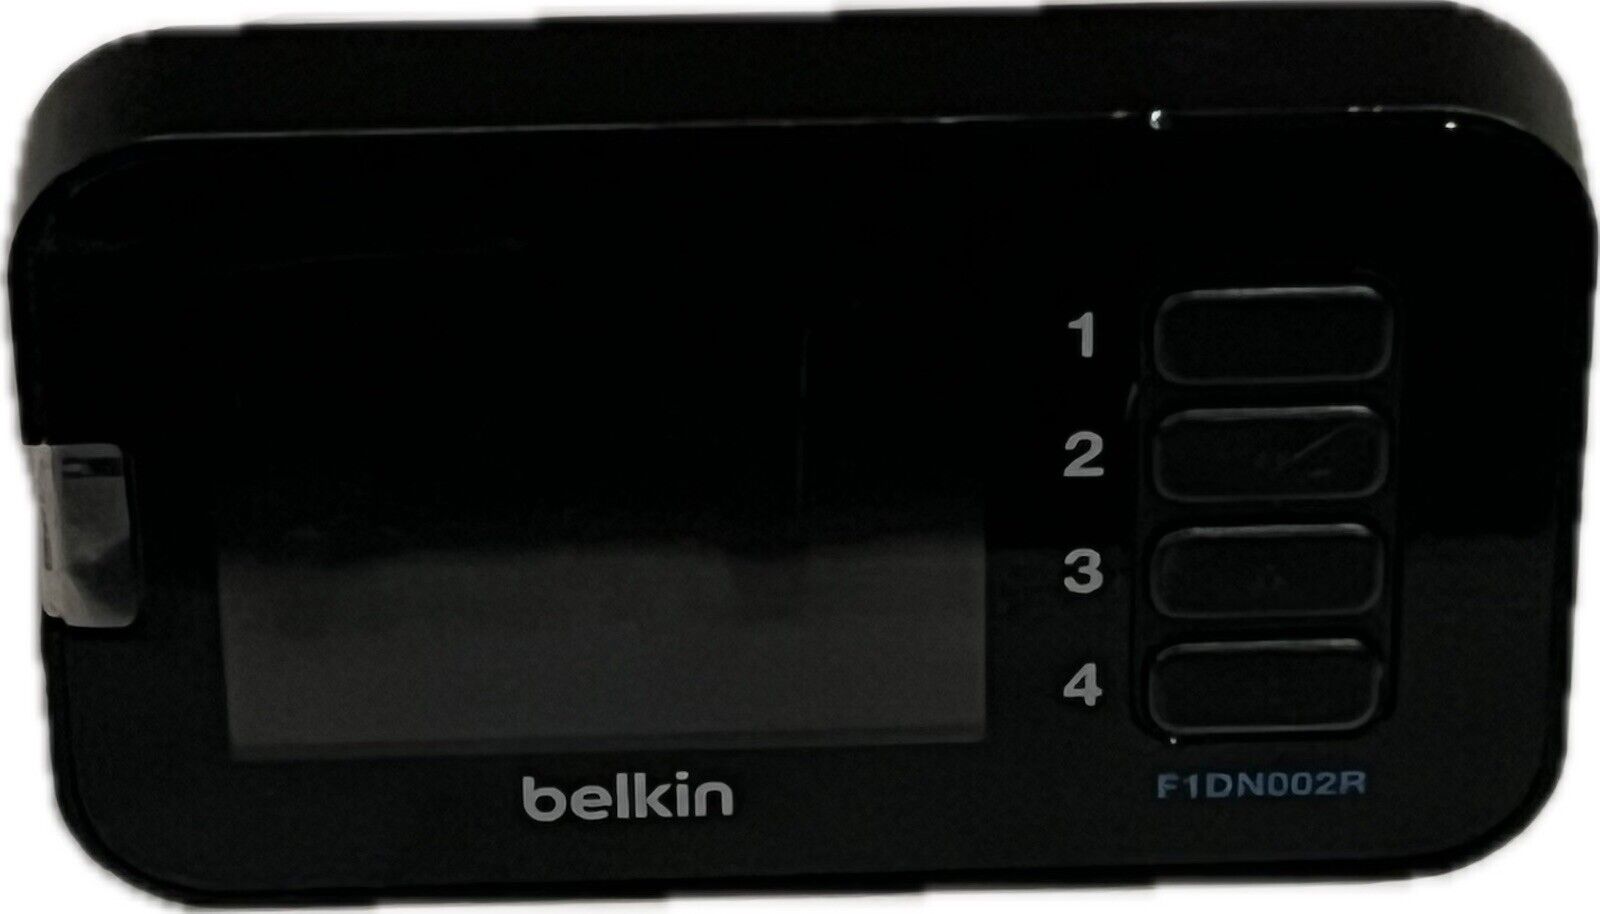 Belkin F1DN002R Advanced Secure LCD Desktop Controller for KVM Switch